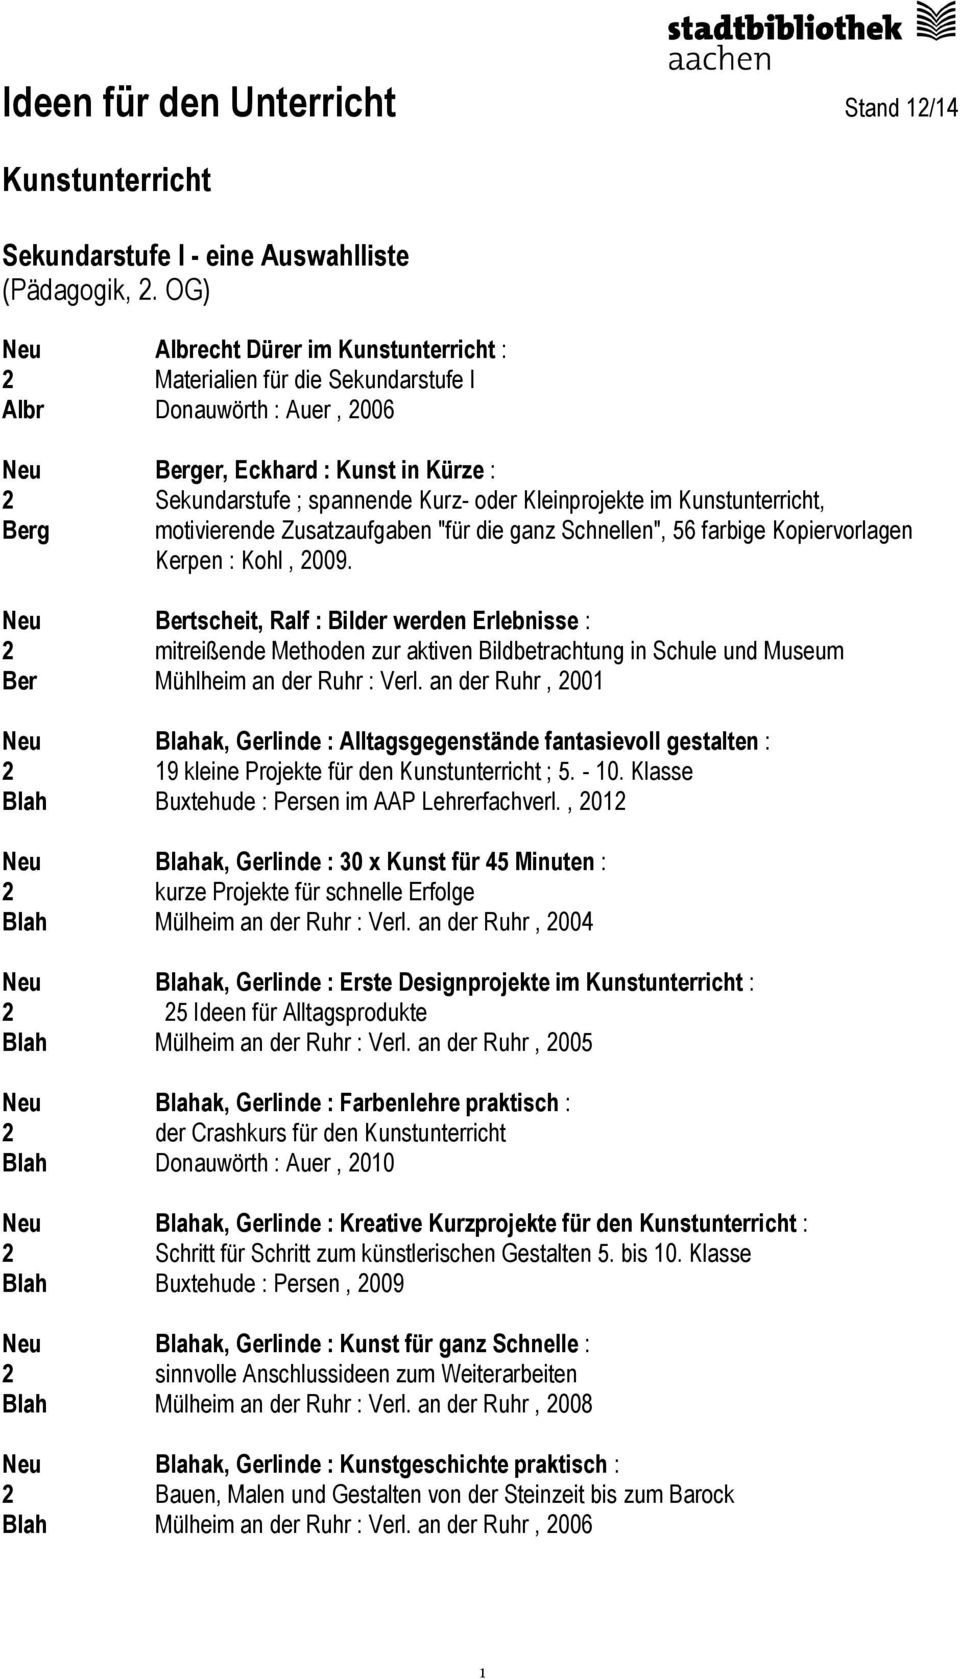 Kleinprojekte im Kunstunterricht, Berg motivierende Zusatzaufgaben "für die ganz Schnellen", 56 farbige Kopiervorlagen Kerpen : Kohl, 2009.